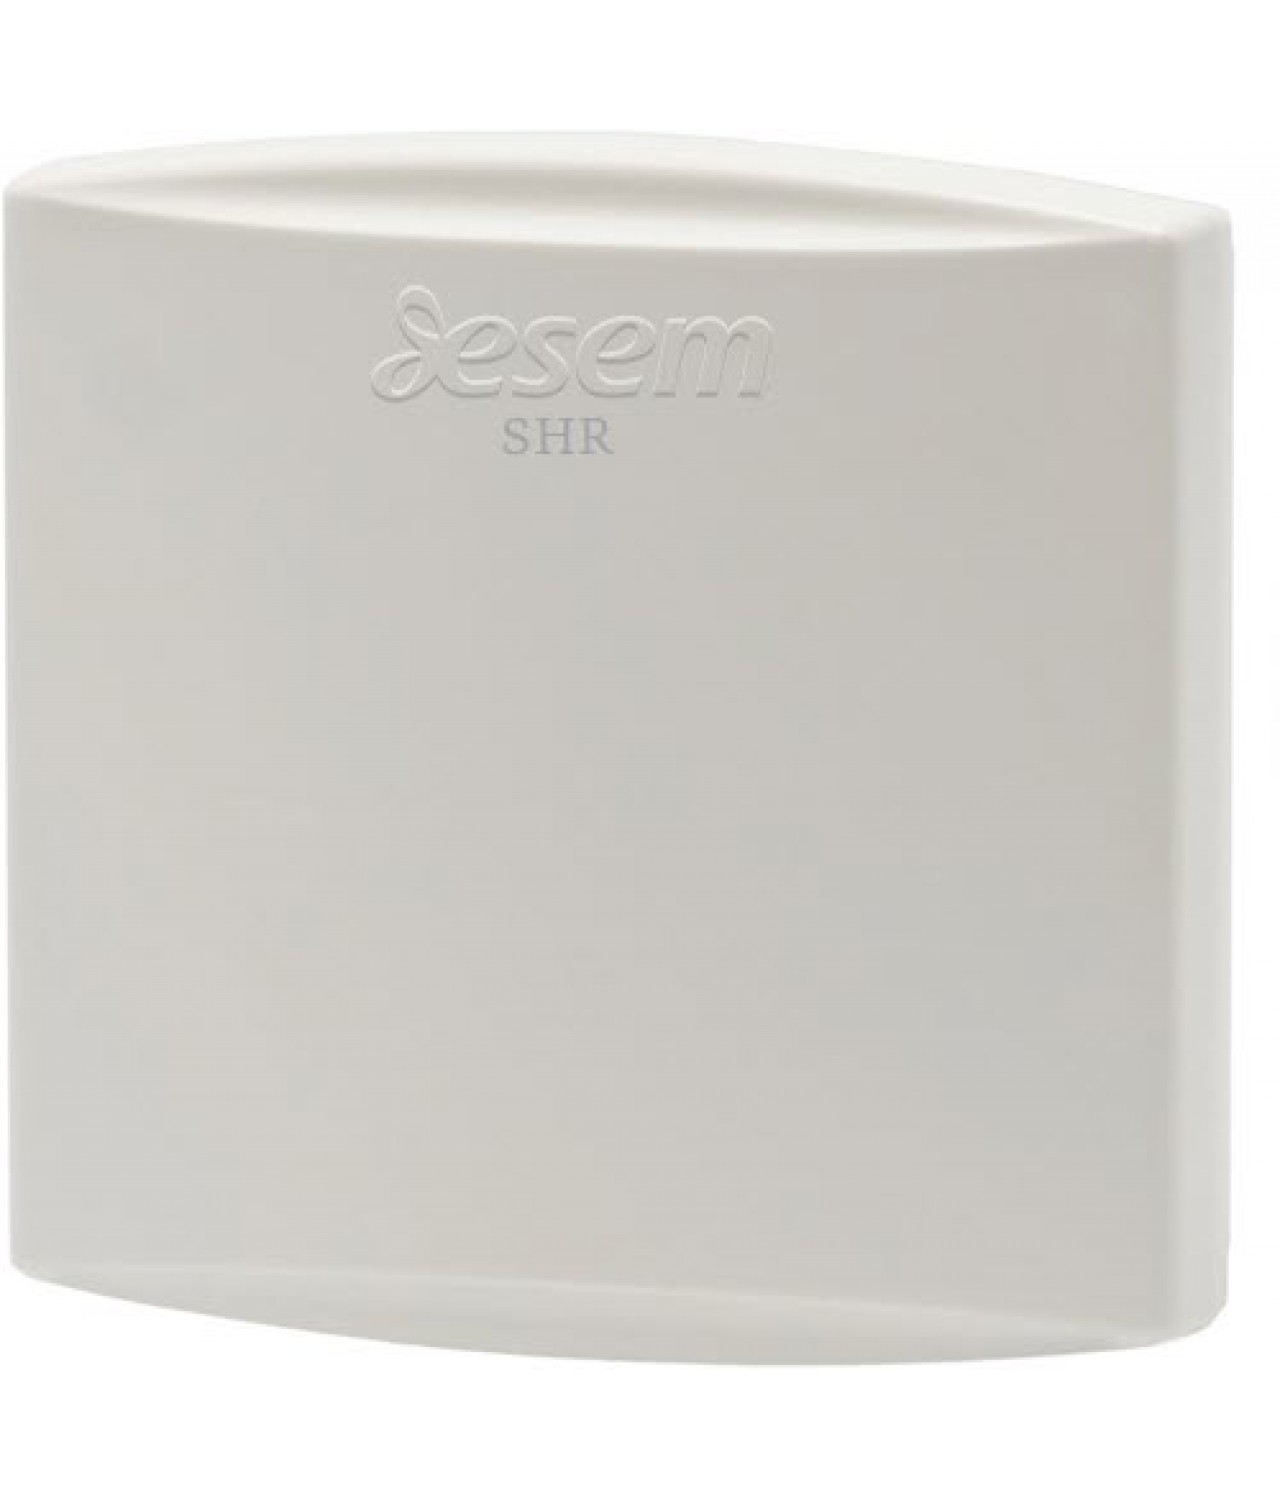 SHR - room temperature and humidity sensor